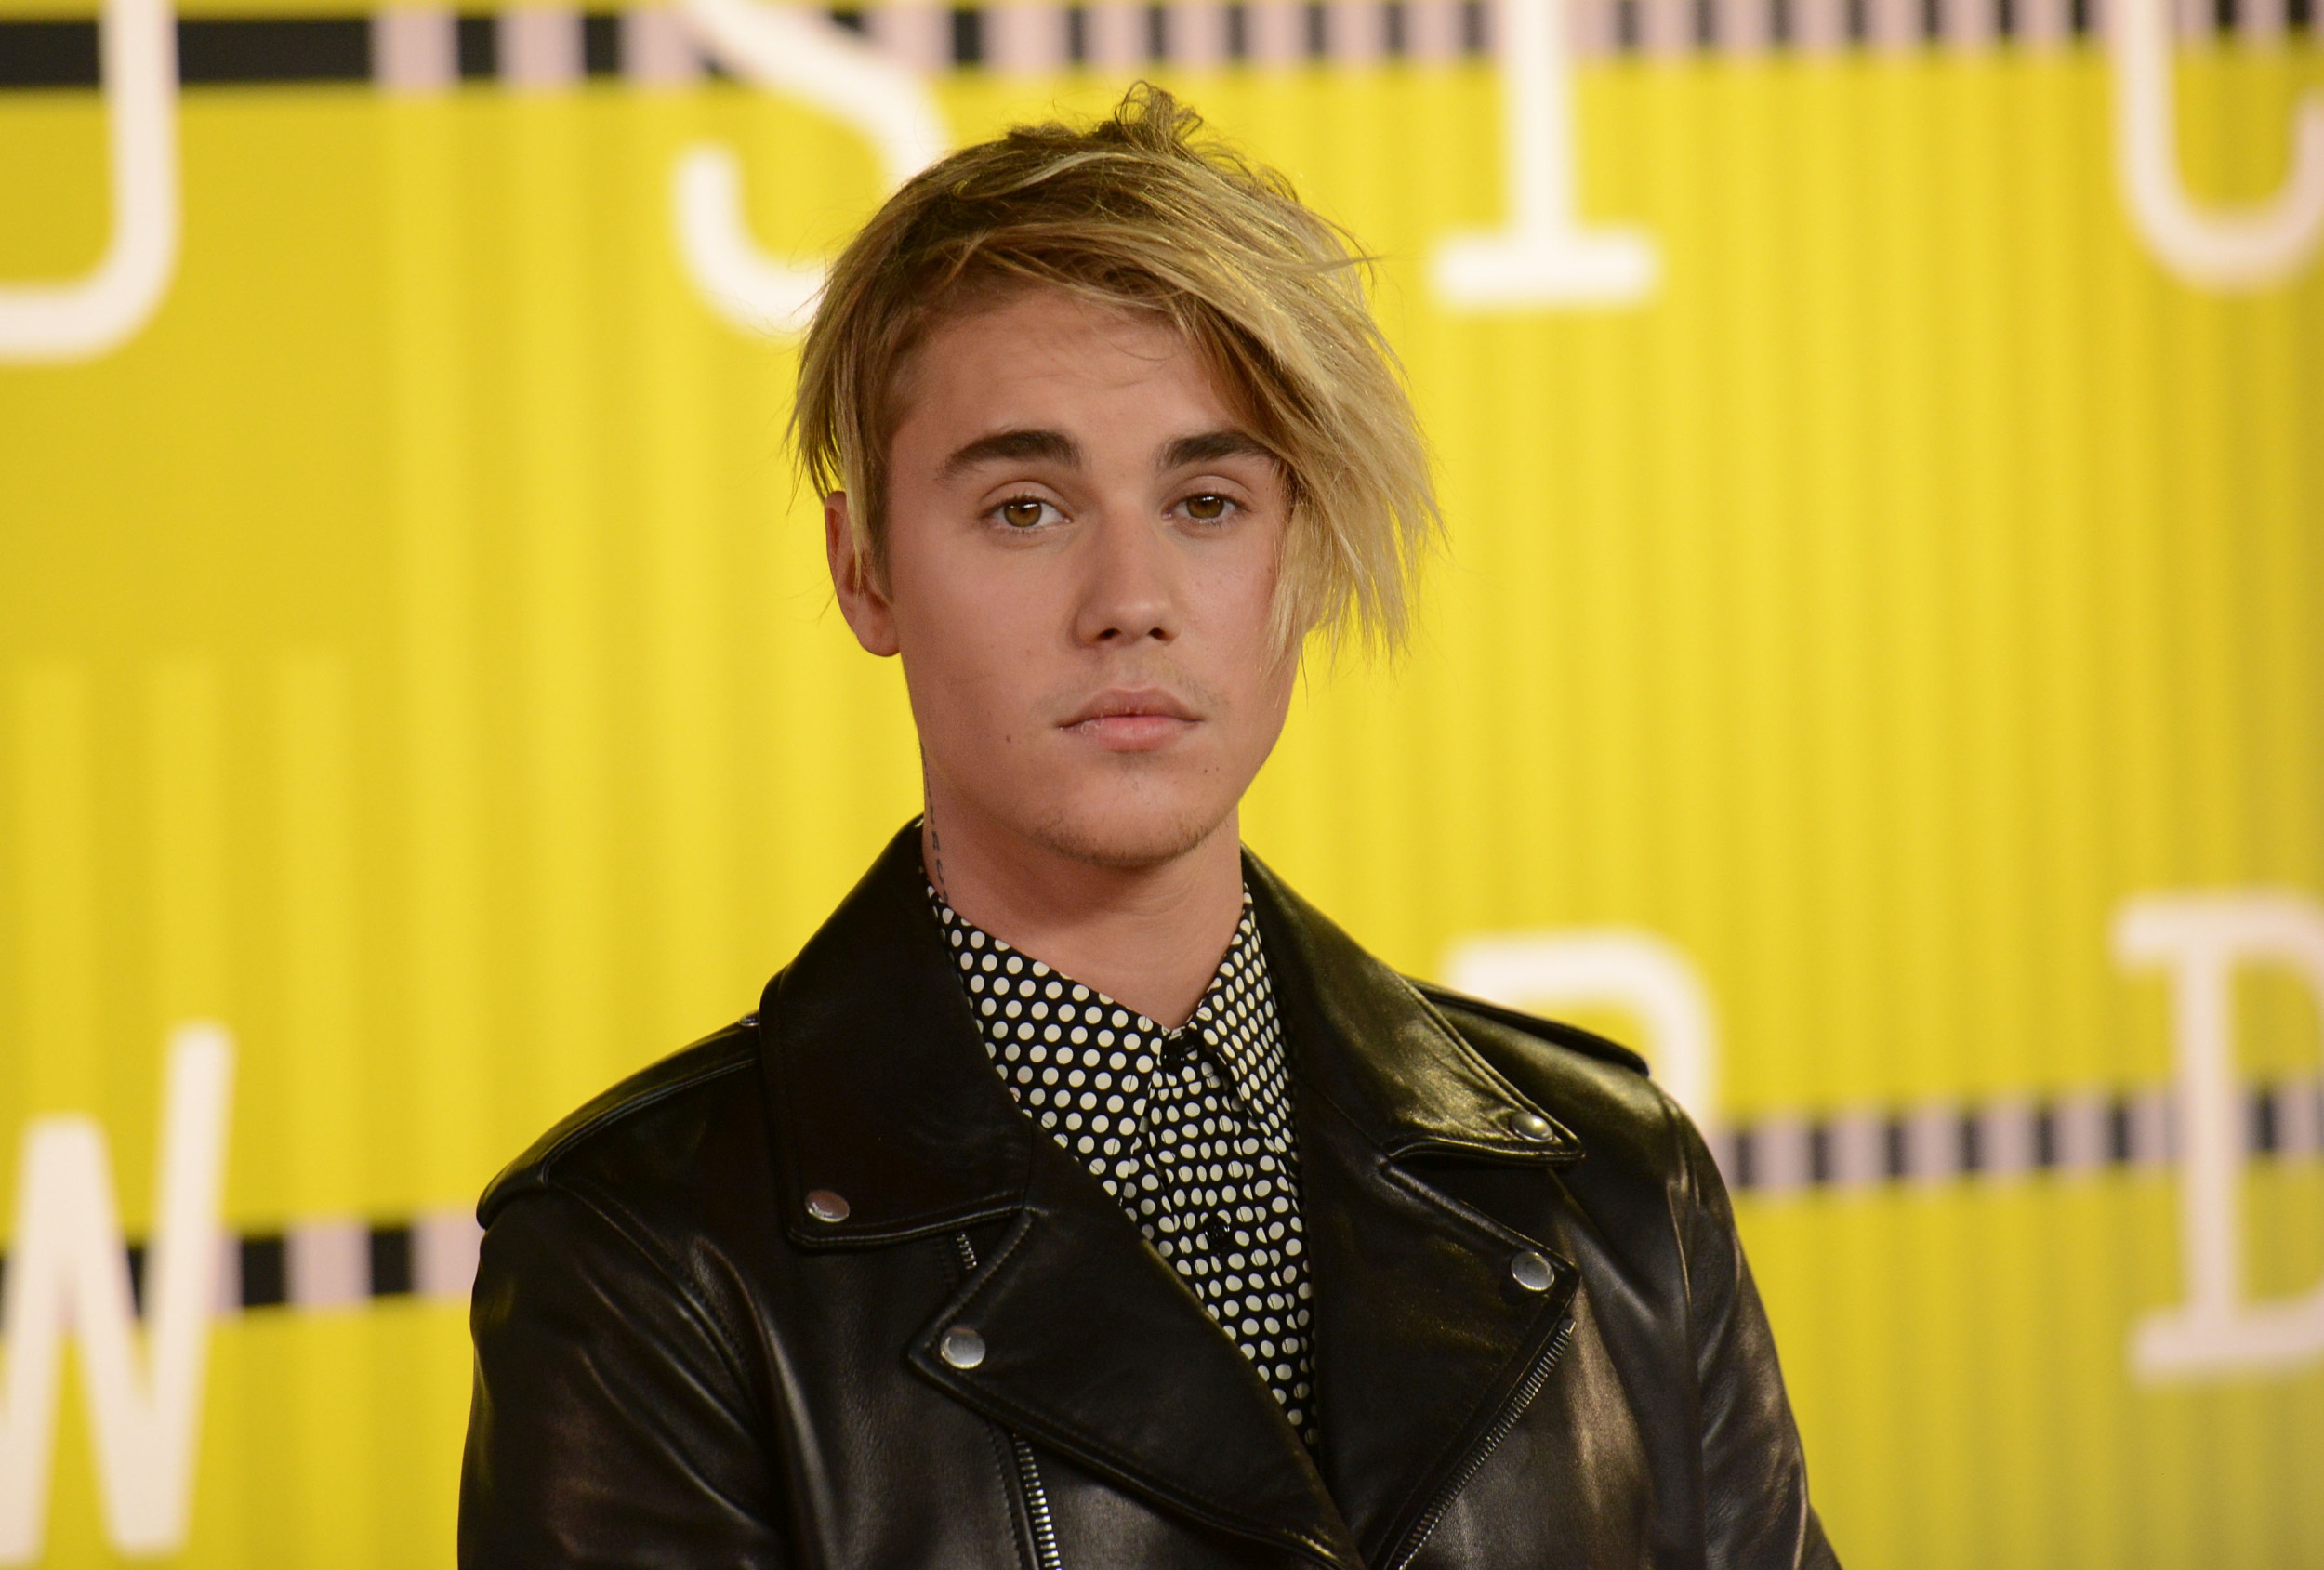 FOTO: Justin Bieber nu mai arată cum îl știai. S-a vopsit MOV!